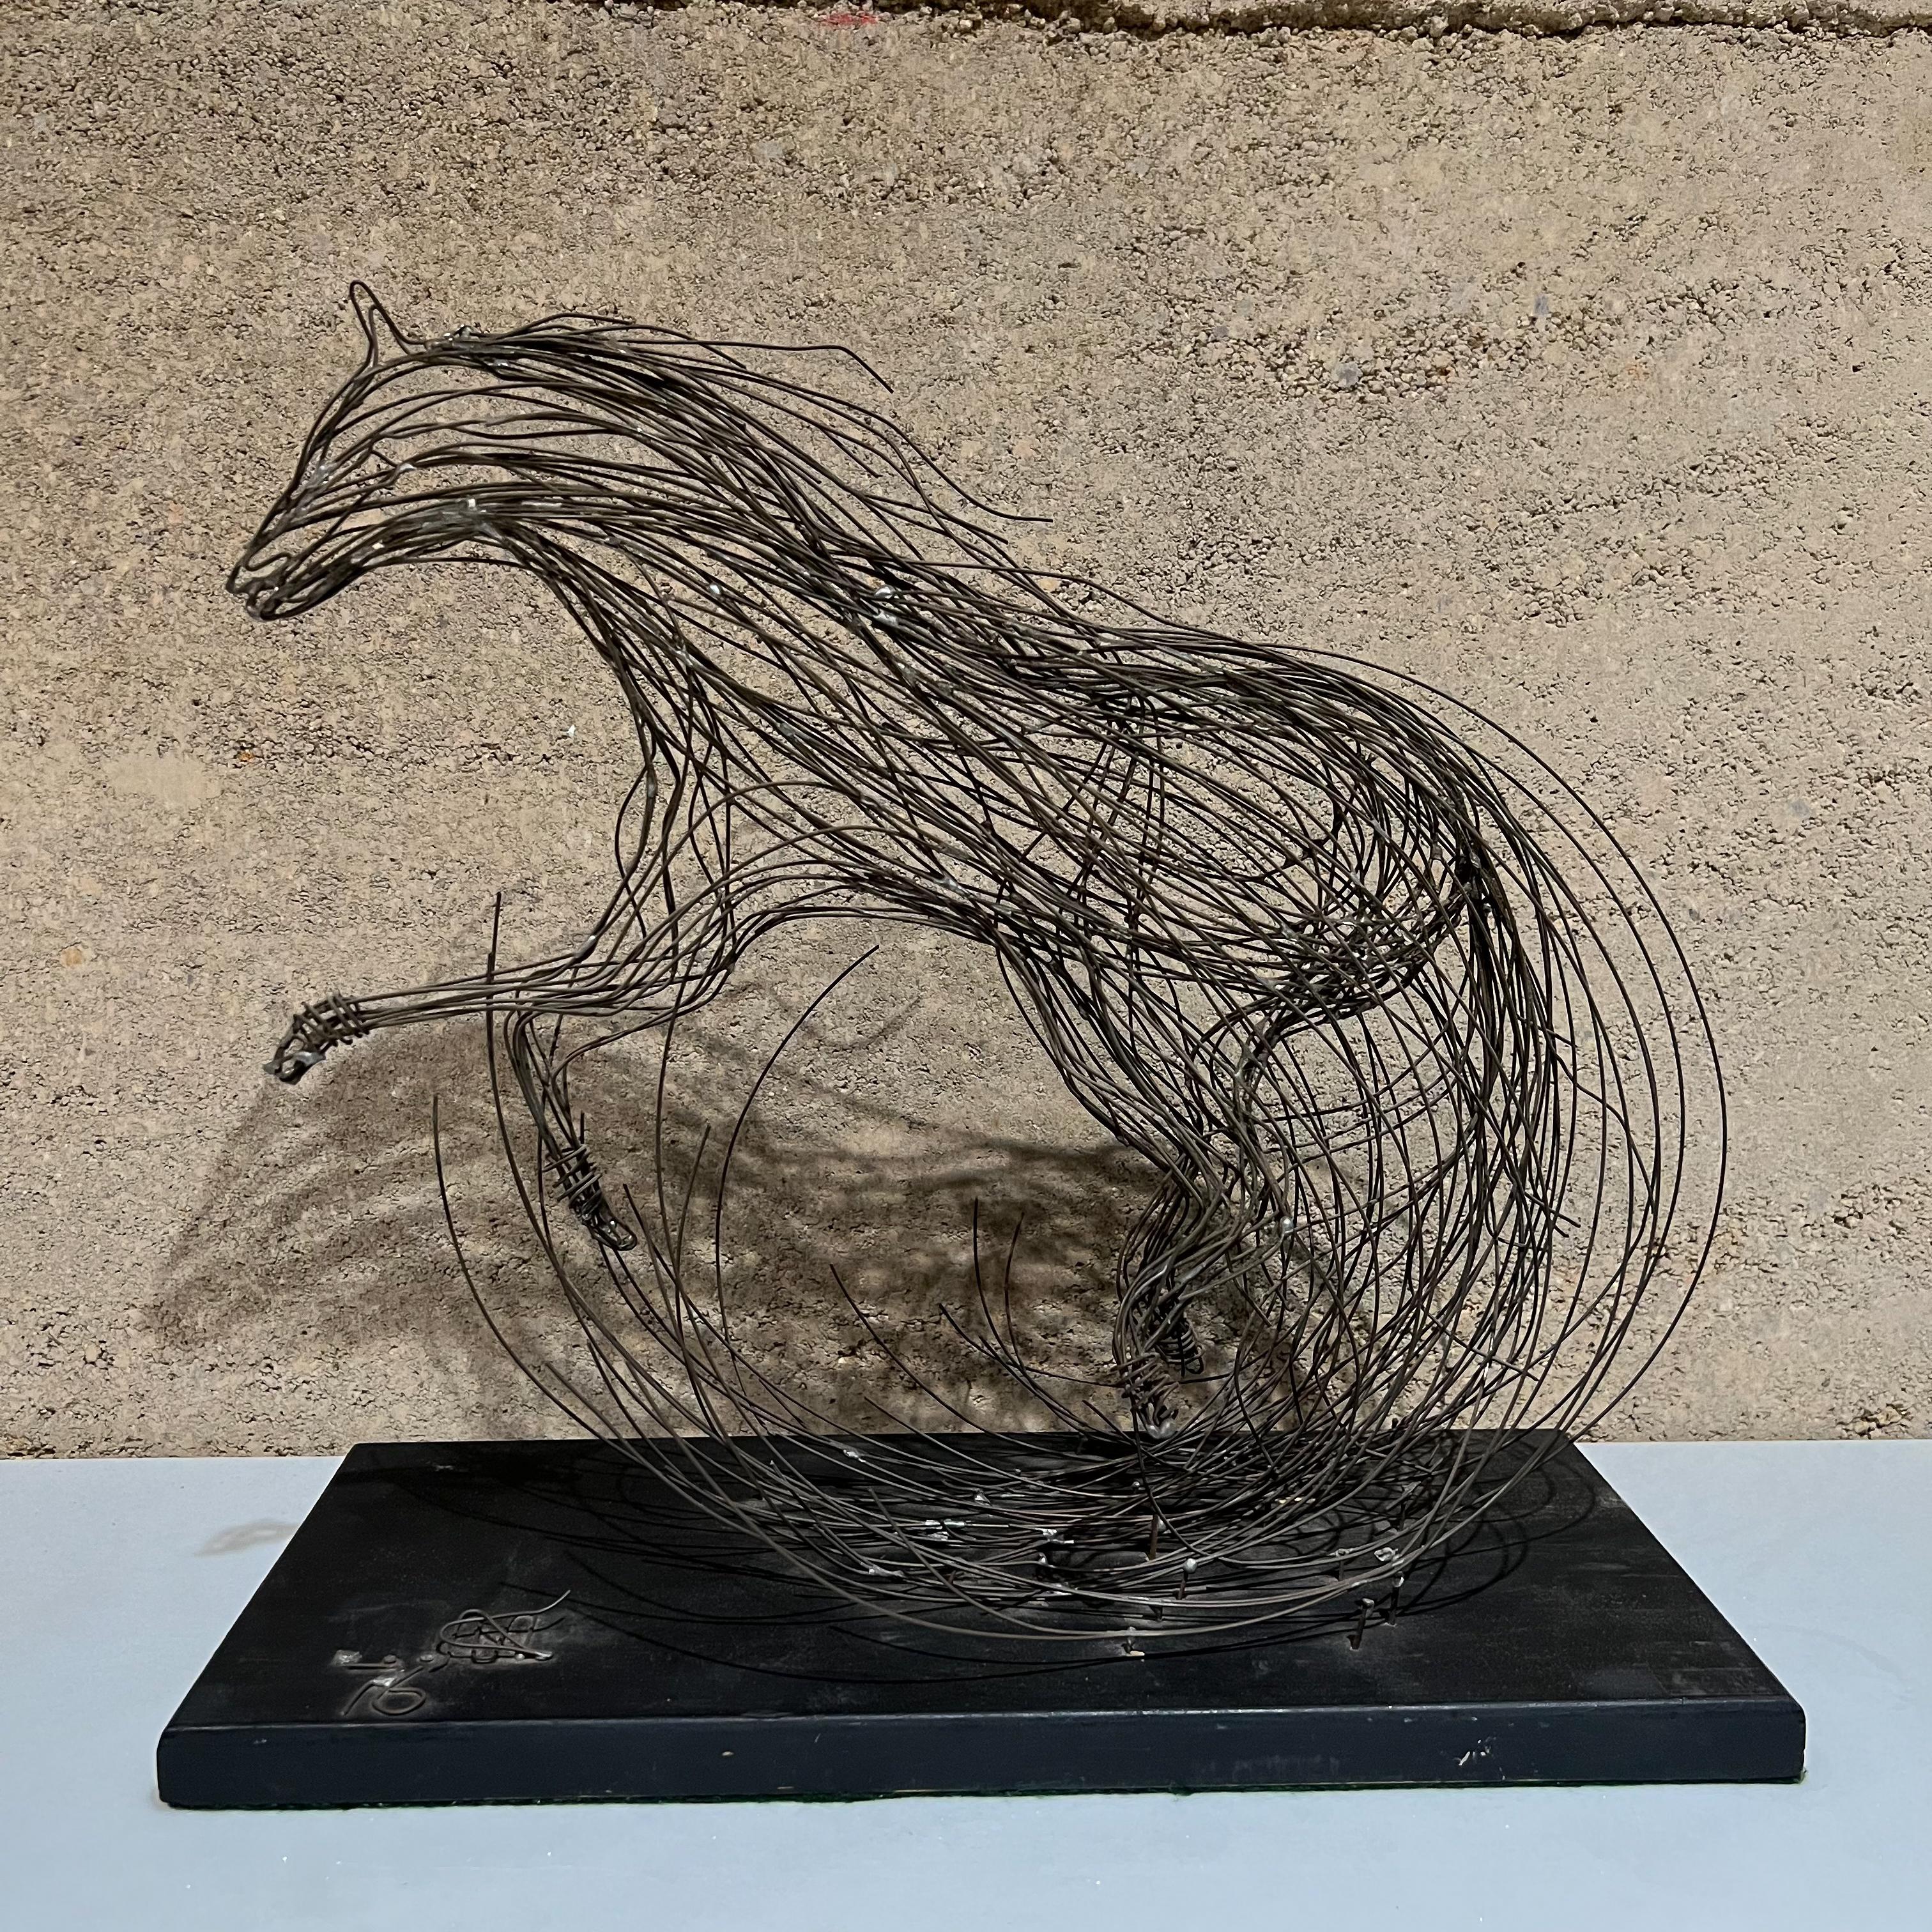 1970 Sculptural Modernisme Cheval Table Sculpture Brutalist Metal Wire Art
Signature de l'artiste en fil de fer cloué sur la base en bois. Une partie de la signature est manquante. 
Impossible de lire.
14.5 haut x 15,25 l x 7 d
État vintage non